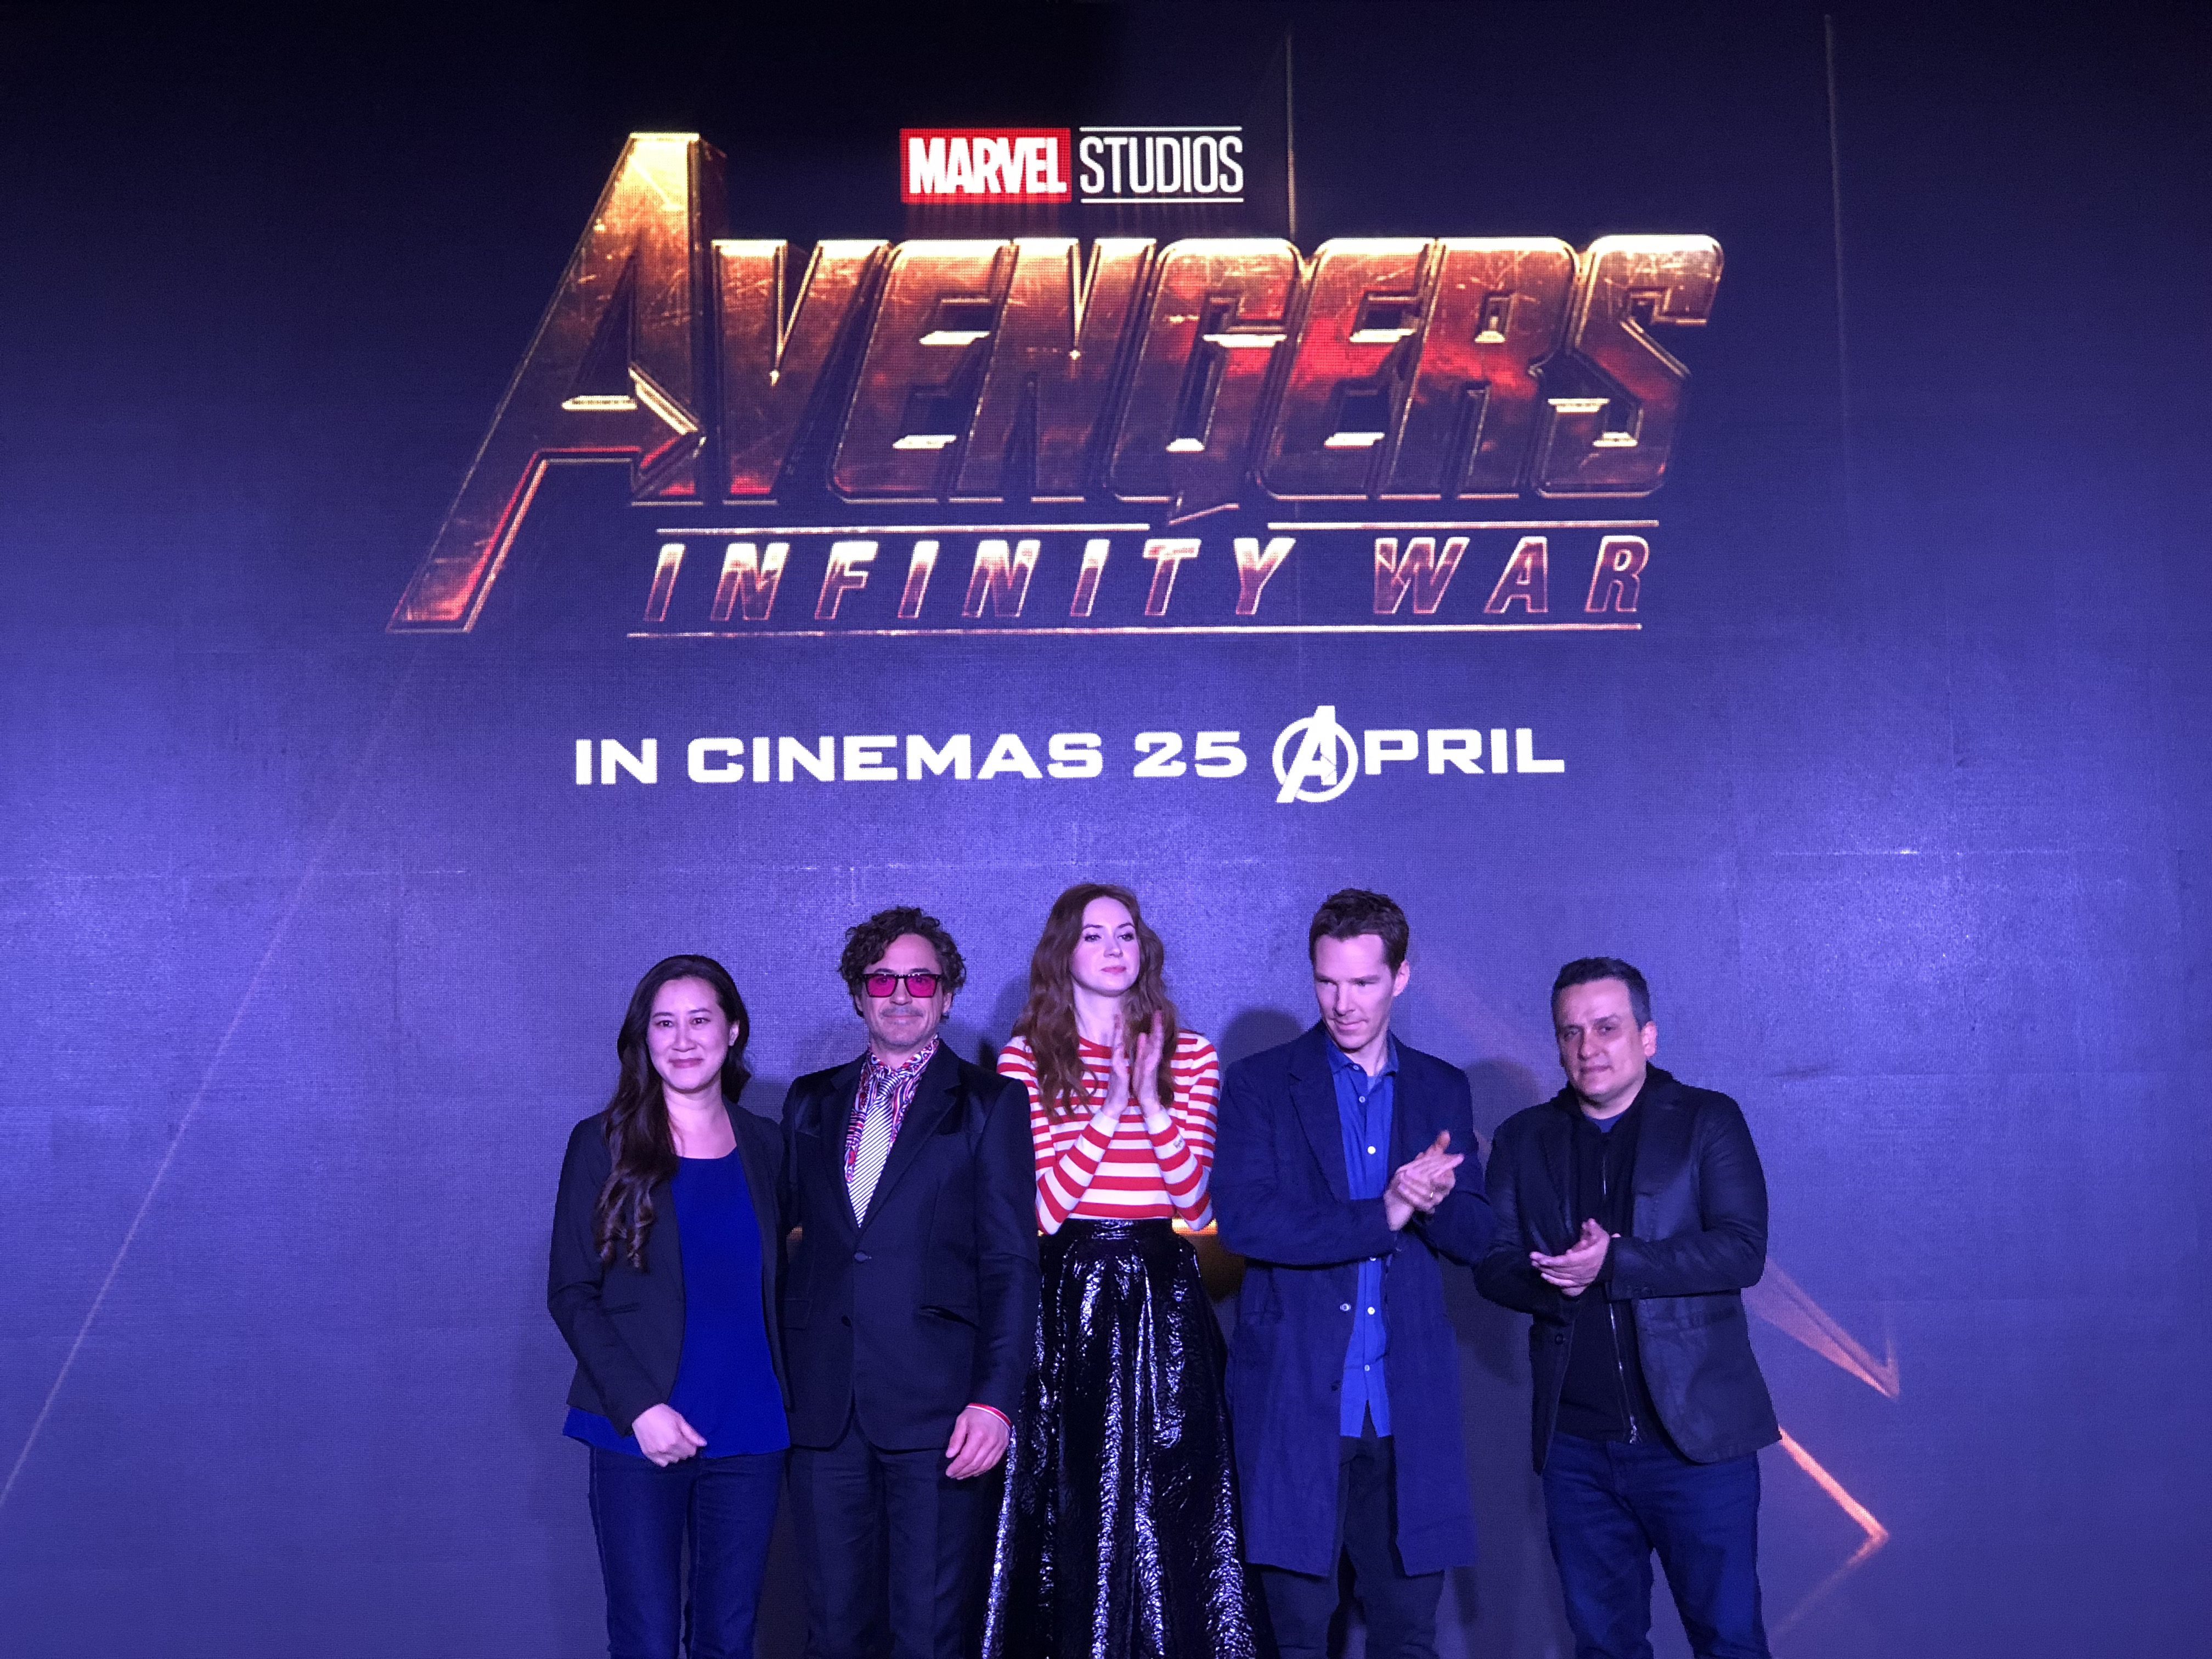 Trinh Tran (executive producer), Robert Downey Jr. (Iron Man), Karen Gillan (Nebula), Benedict Cumberbatch (Doctor Strange), and Joe Russo (director) from “Avengers: Infinity War”.